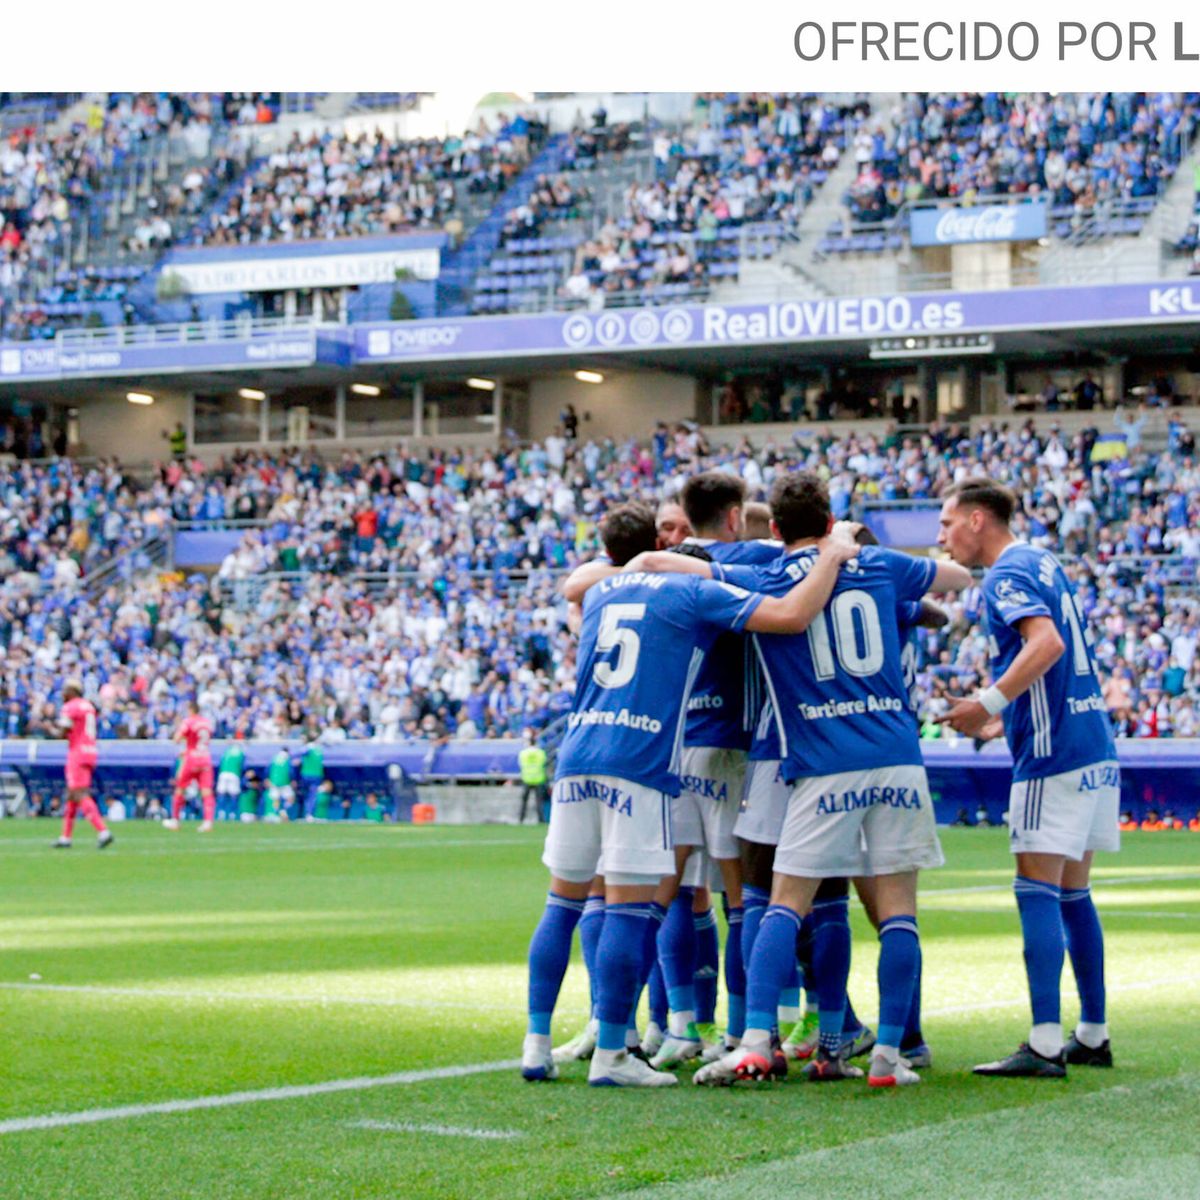 El Real Oviedo suma un punto en el derbi asturiano, Real Oviedo